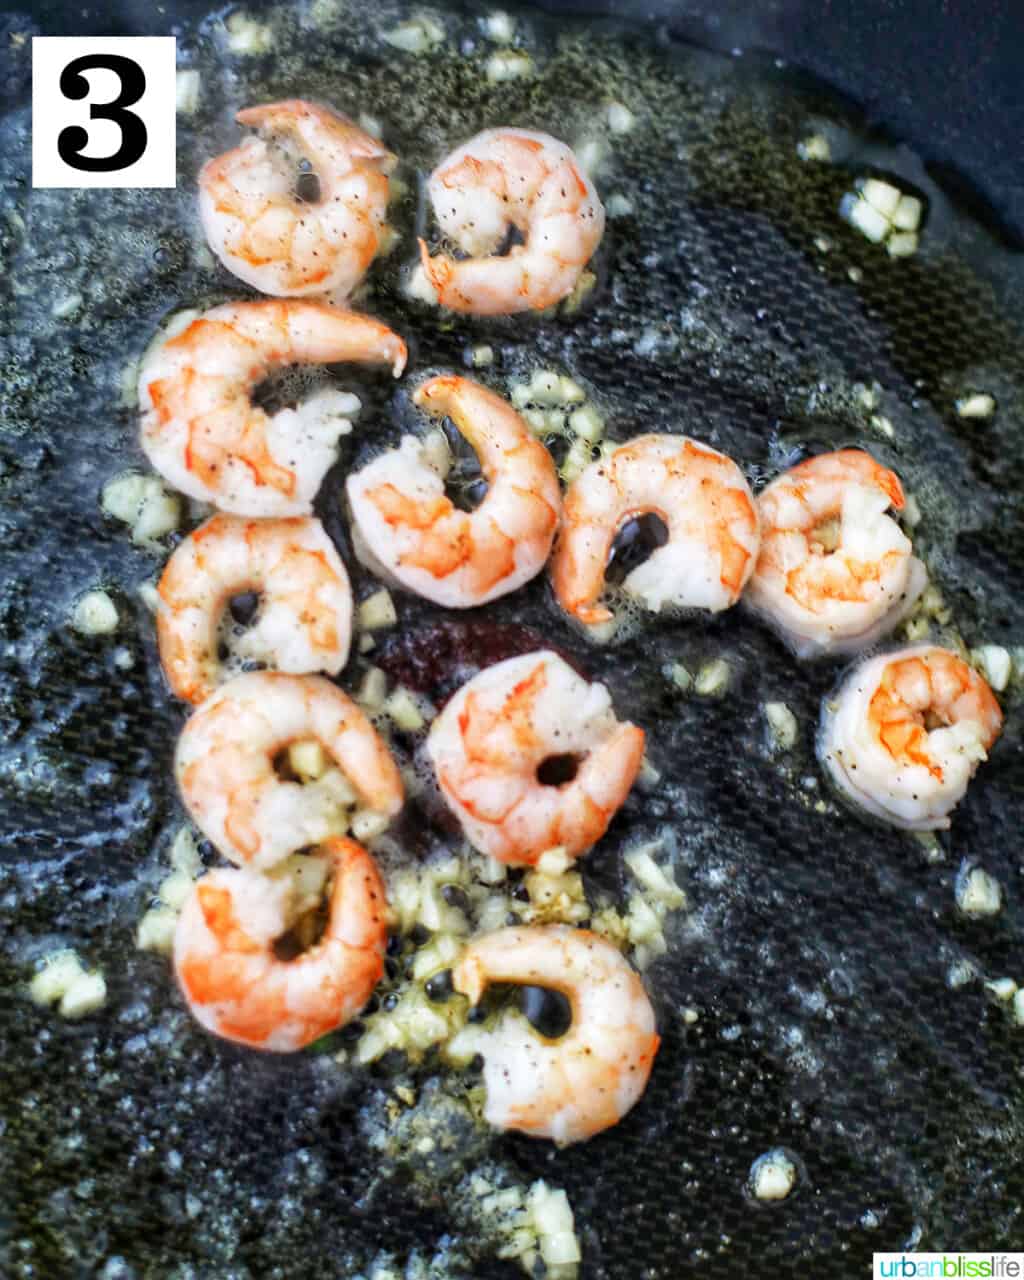 saute shrimp in pan